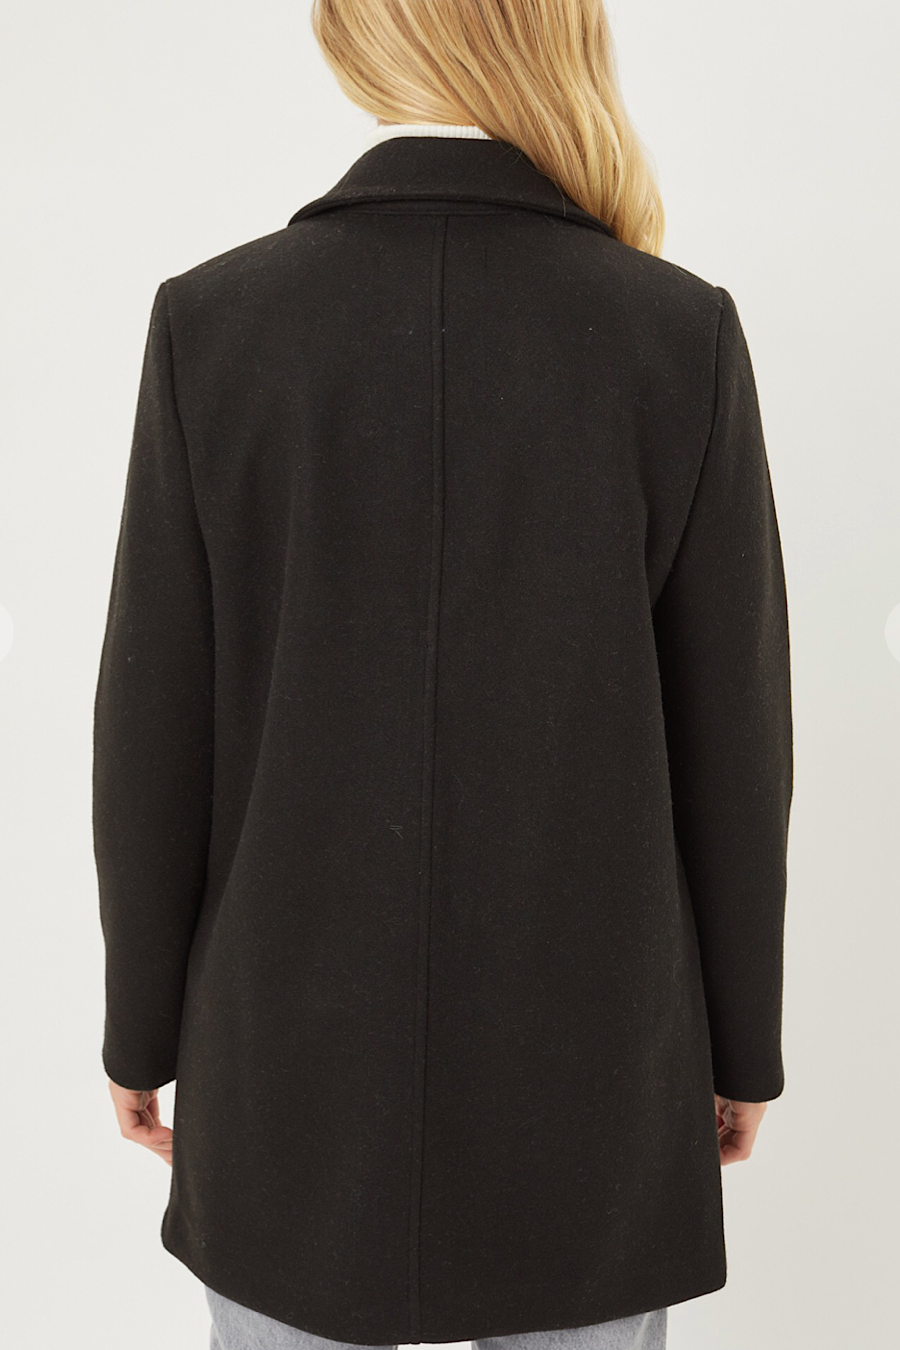 Boulder Single Buttoned Coat in Black